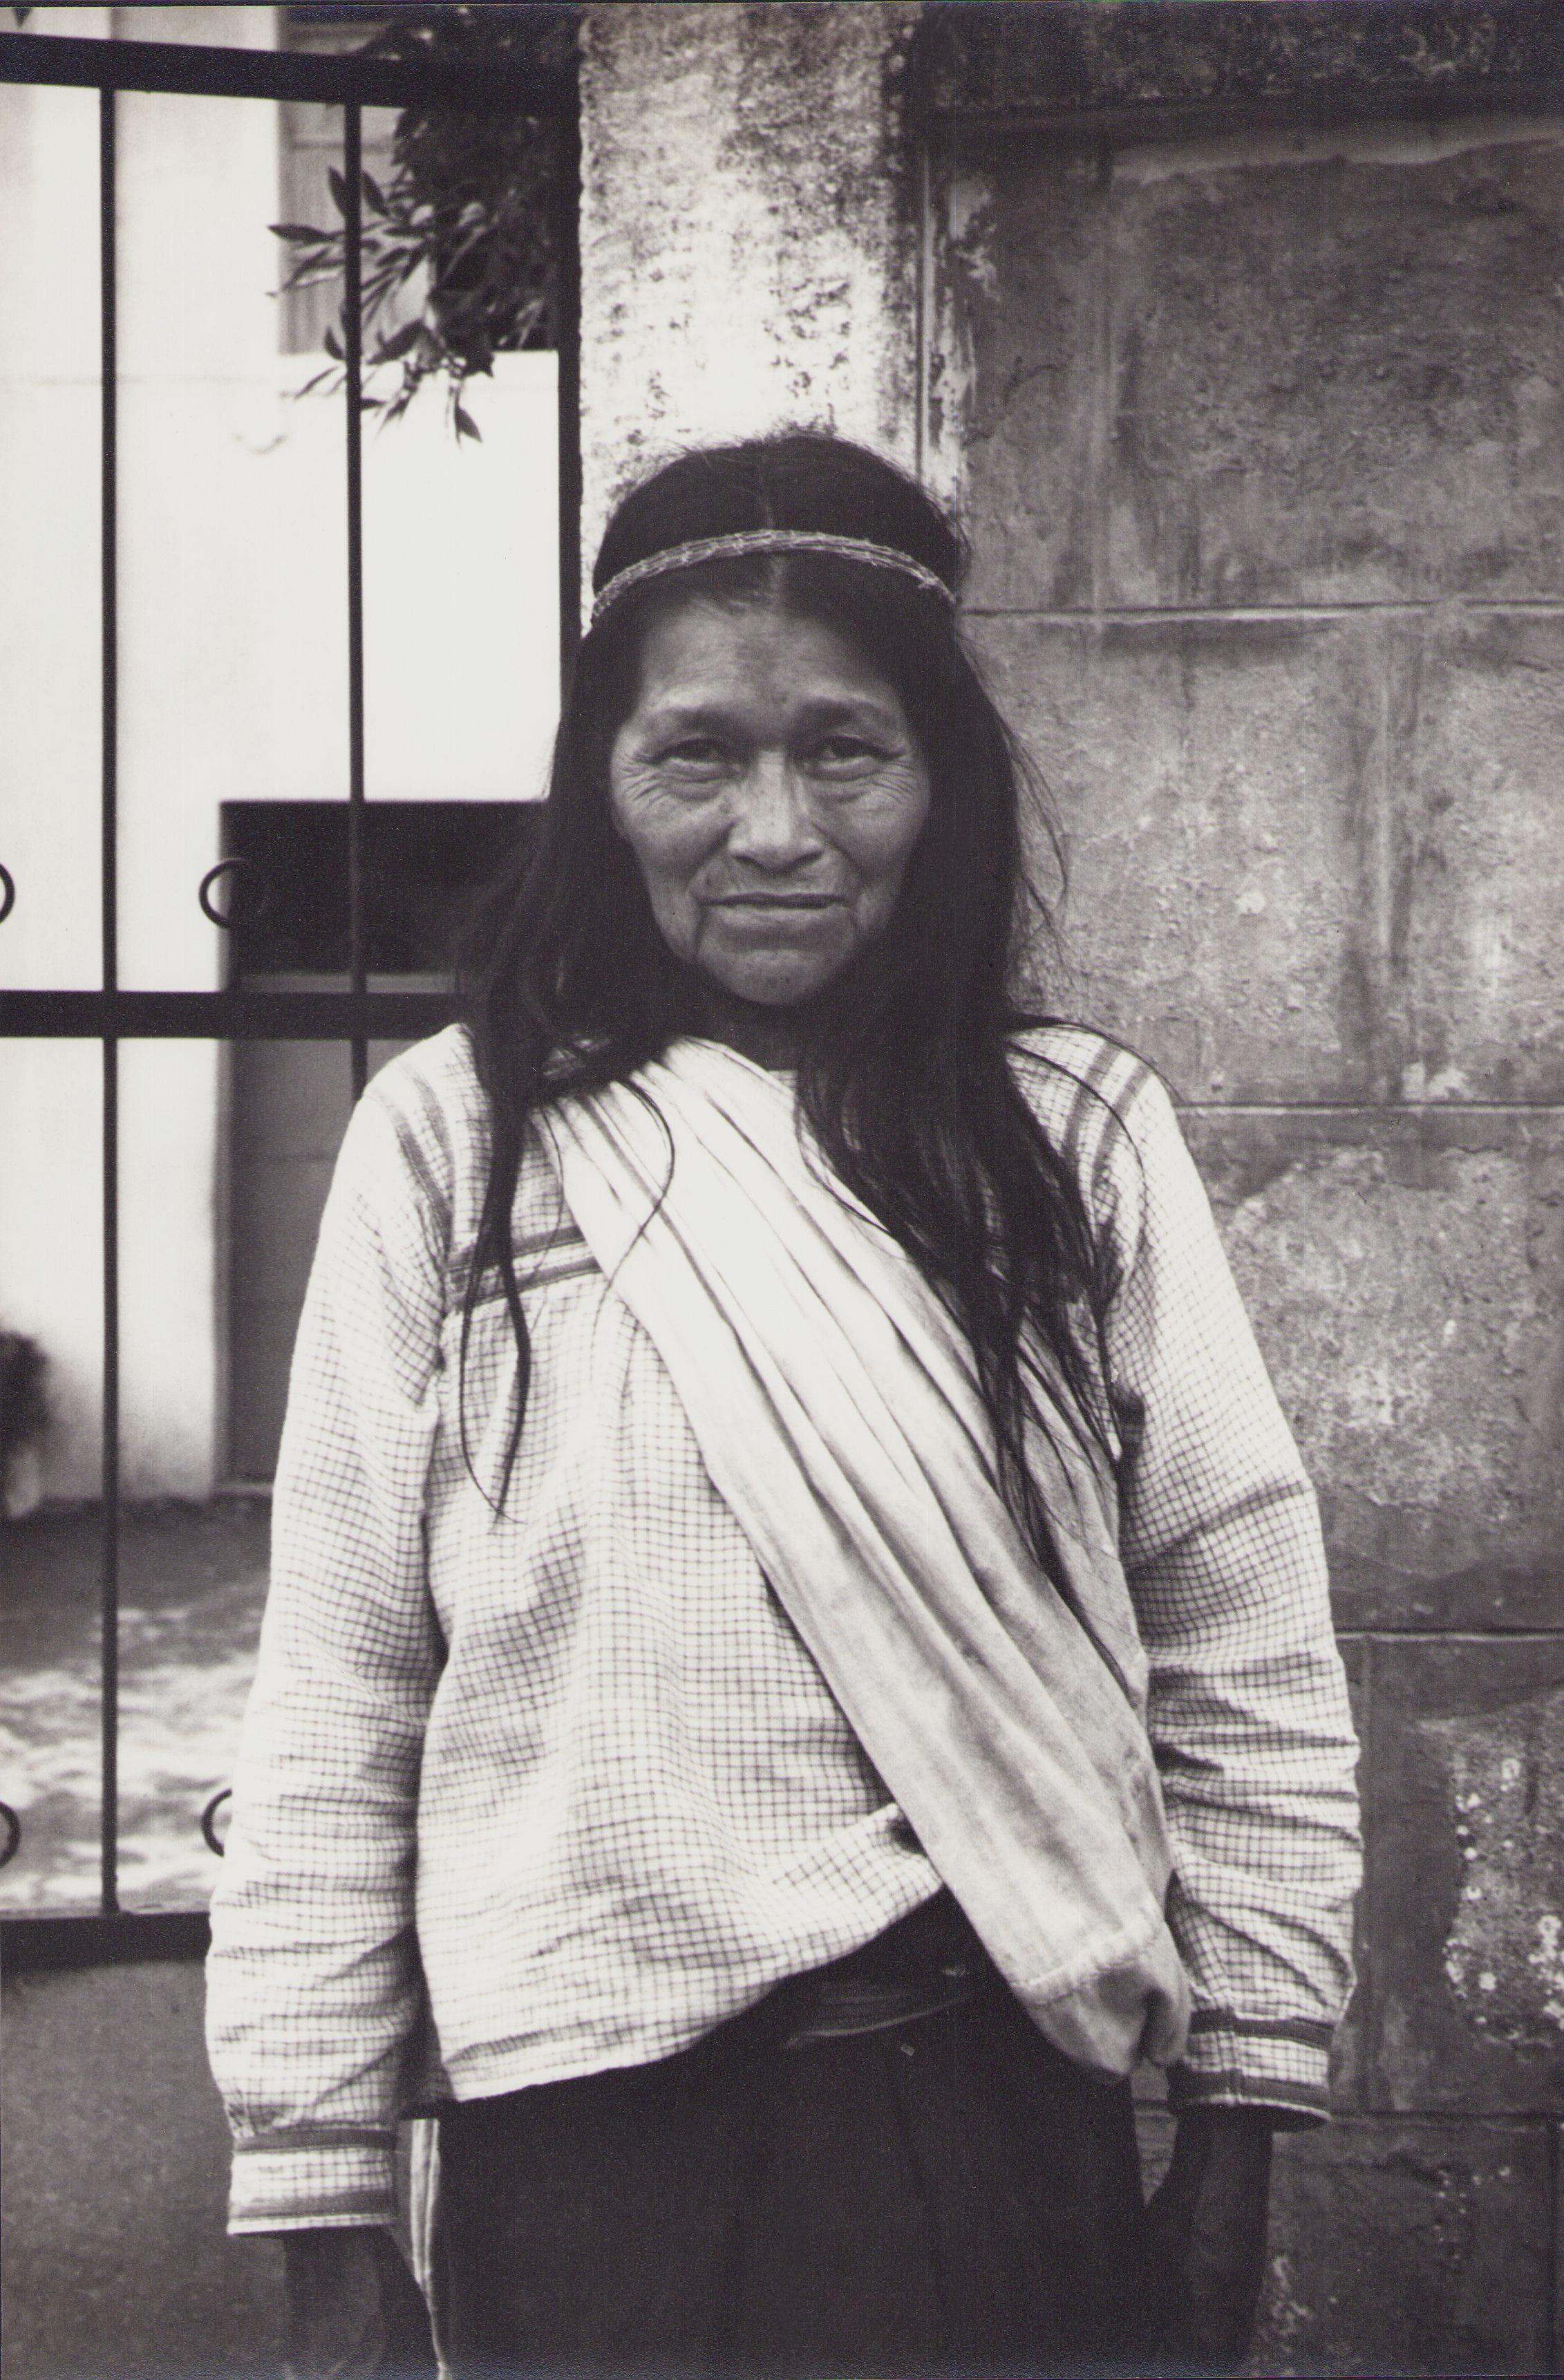 Hanna Seidel Portrait Photograph - Ecuador, Indigenous, Woman, Black and White Photography, 1960s, 29 x 19, 4 cm